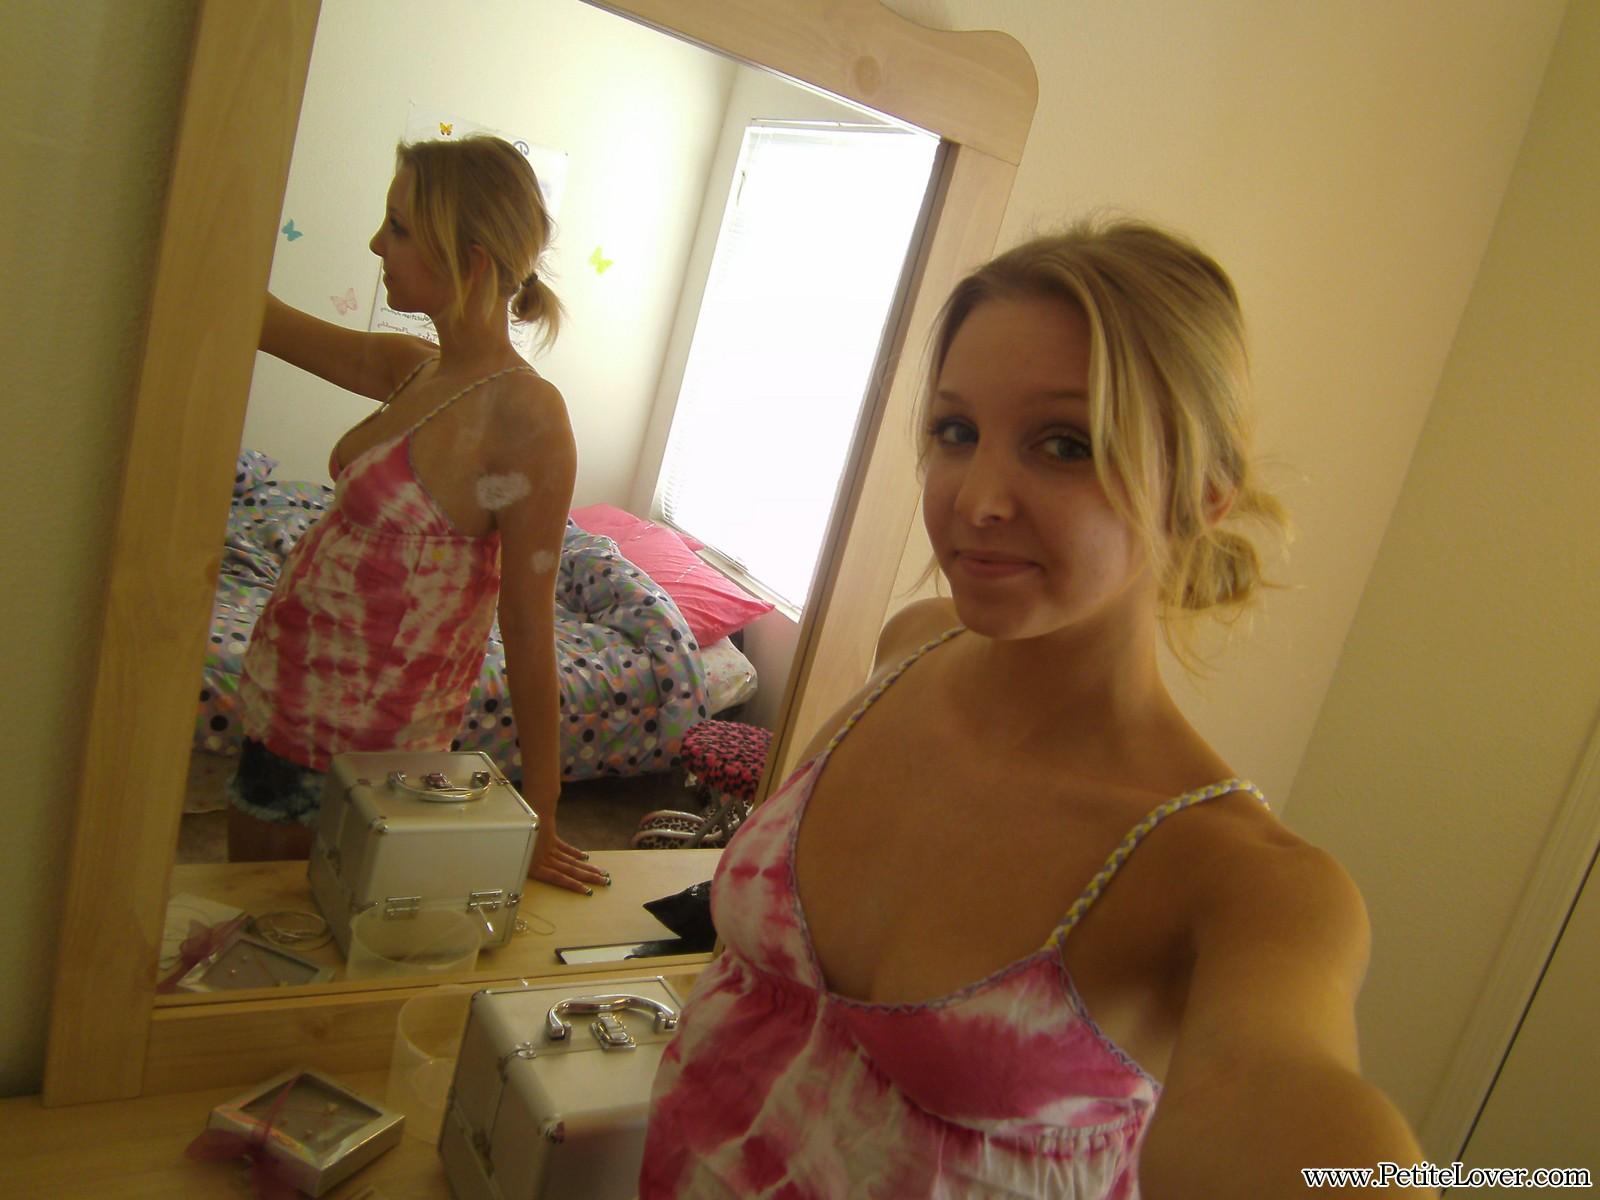 La teenager bionda elle si fa dei selfie in topless per voi allo specchio
 #54160291